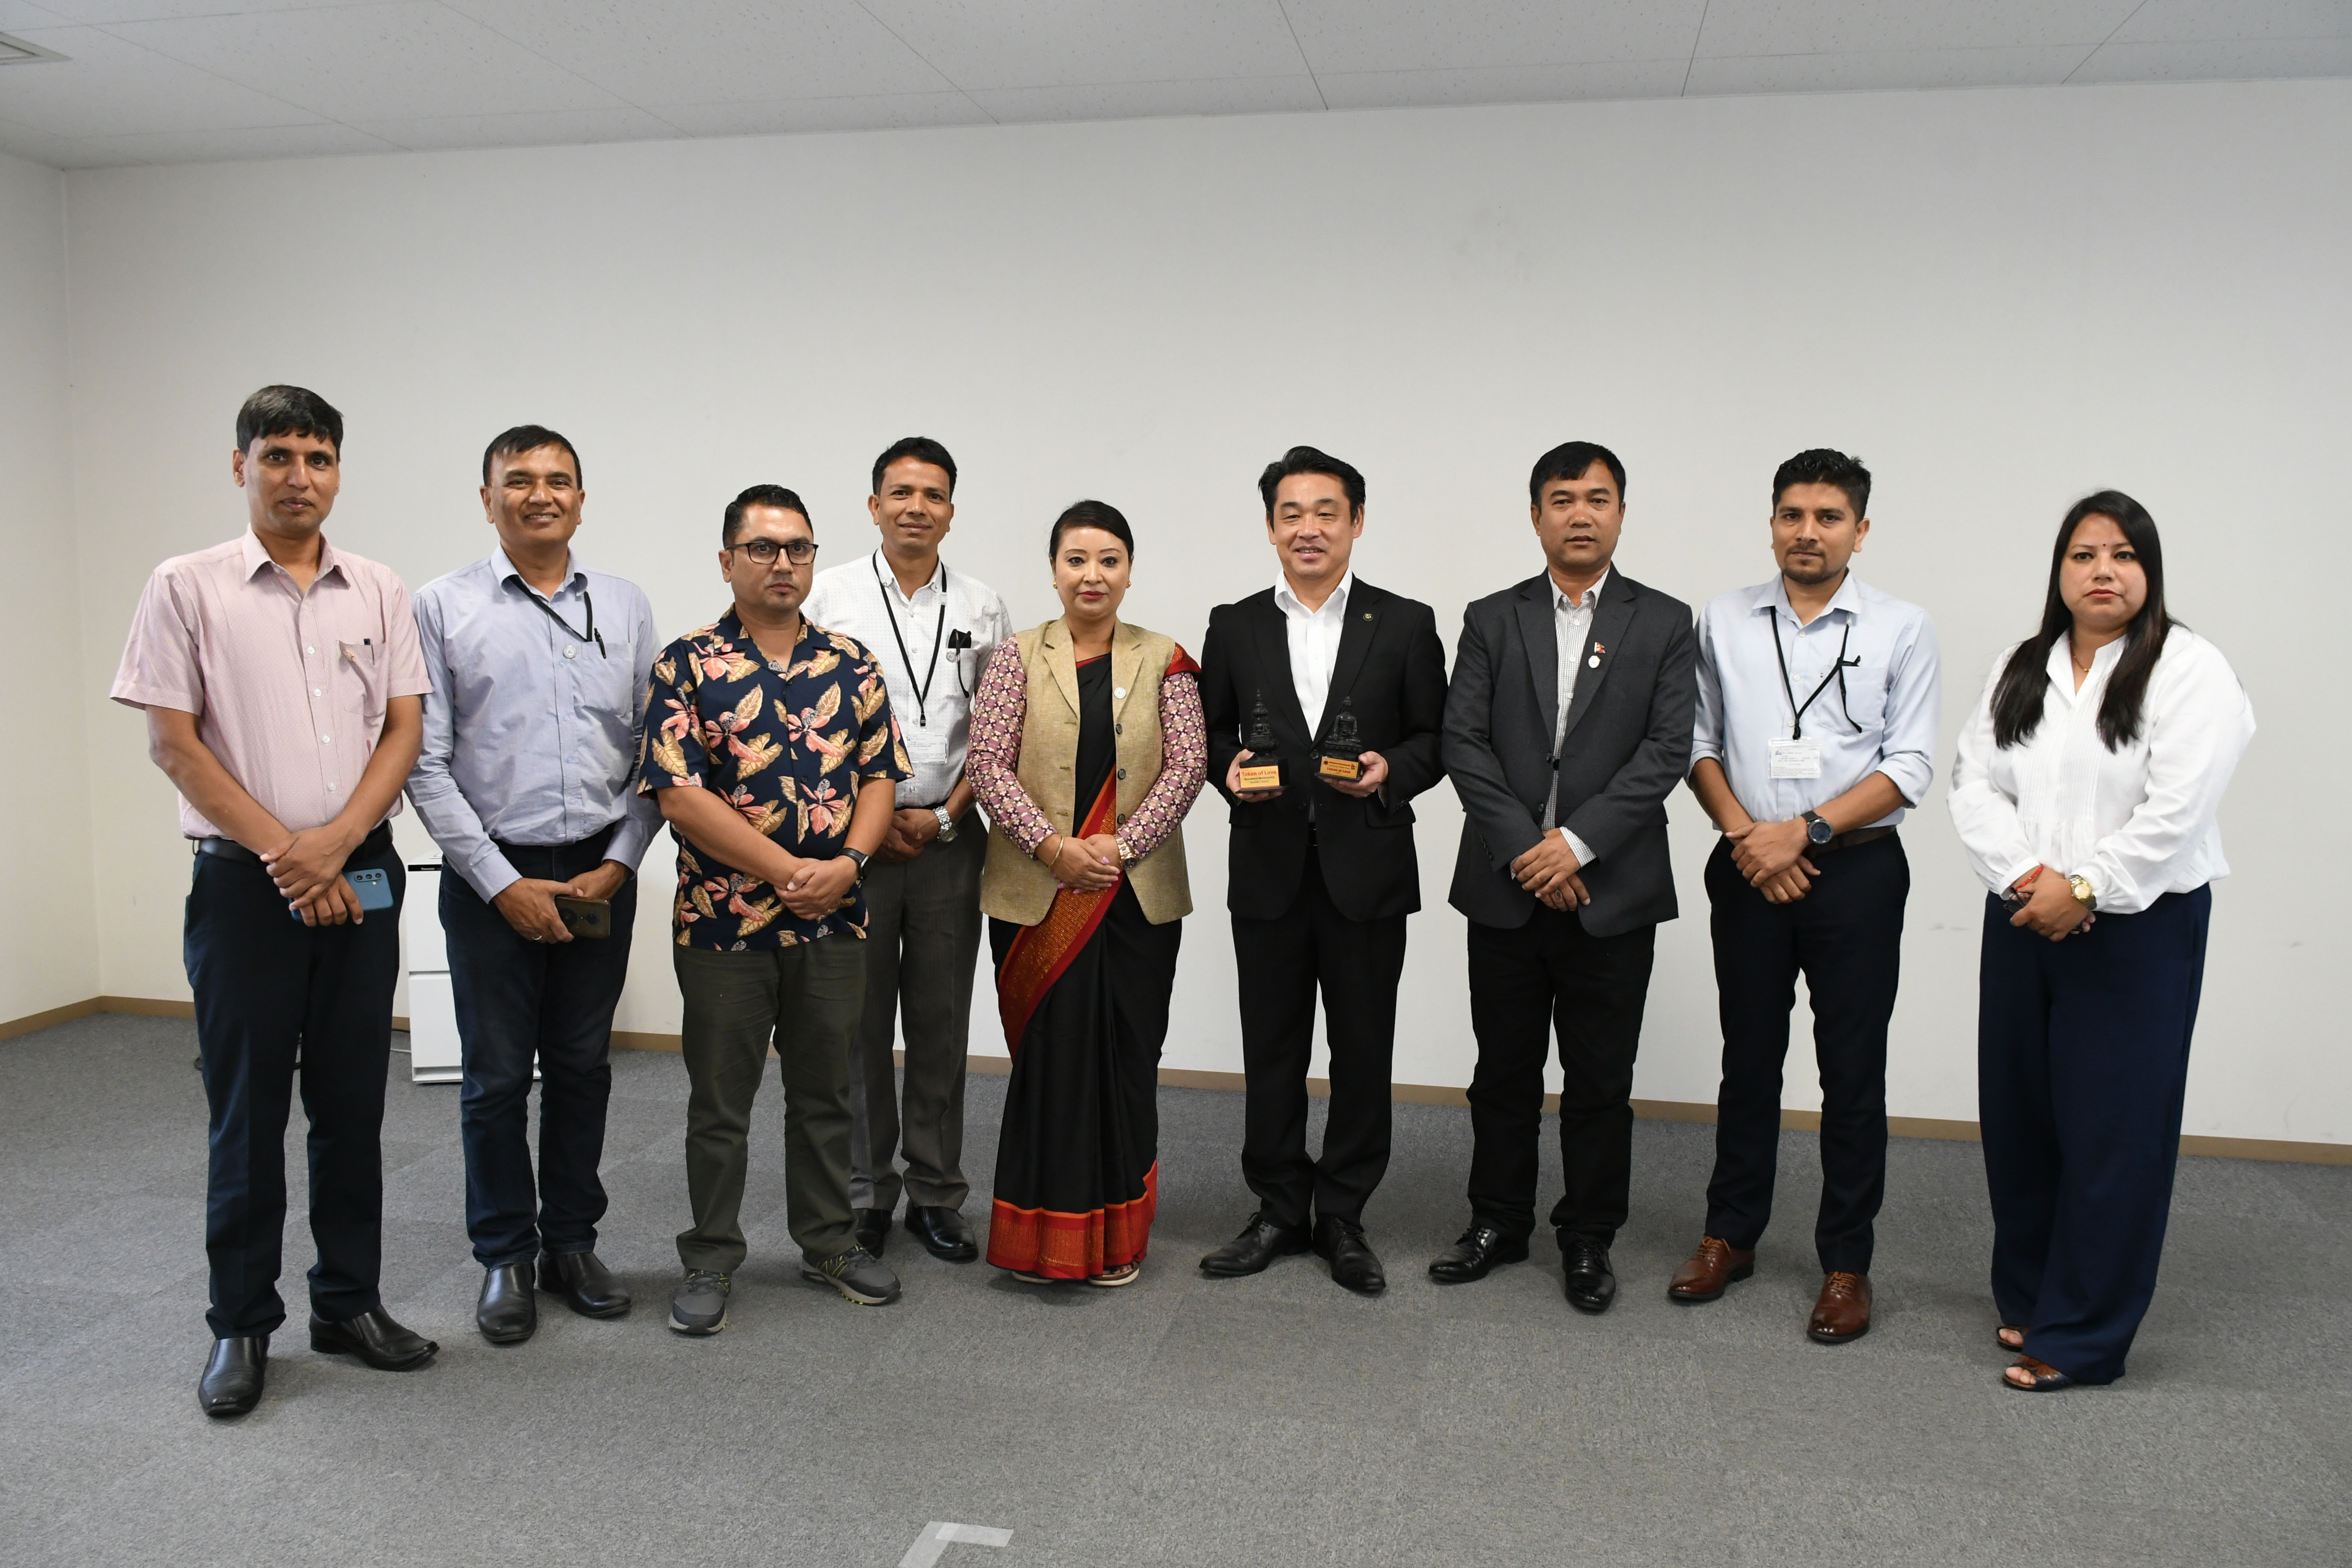 ネパール技術協力プロジェクト視察団が来訪されました